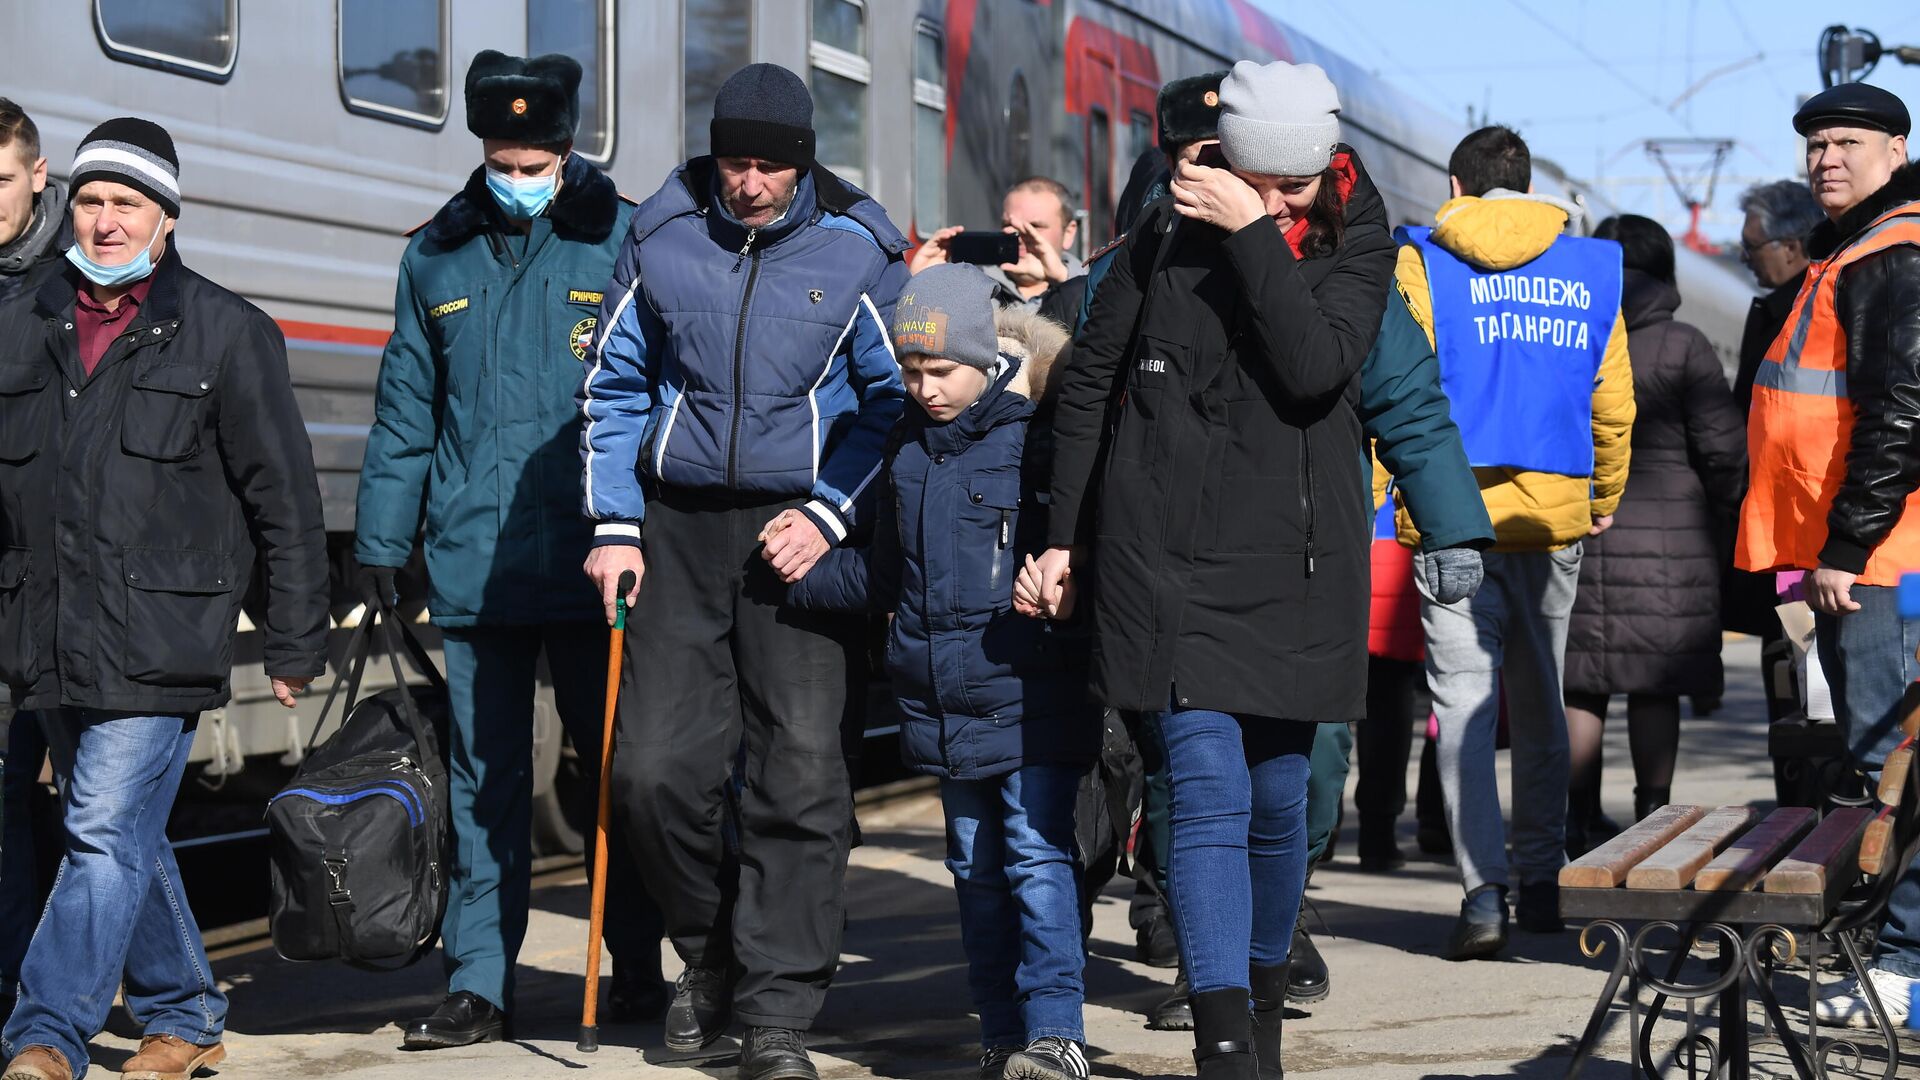 Беженцы из Донбасса во время посадки на поезд, следующий в Белгород, на железнодорожном вокзале в Таганроге - РИА Новости, 1920, 21.02.2022